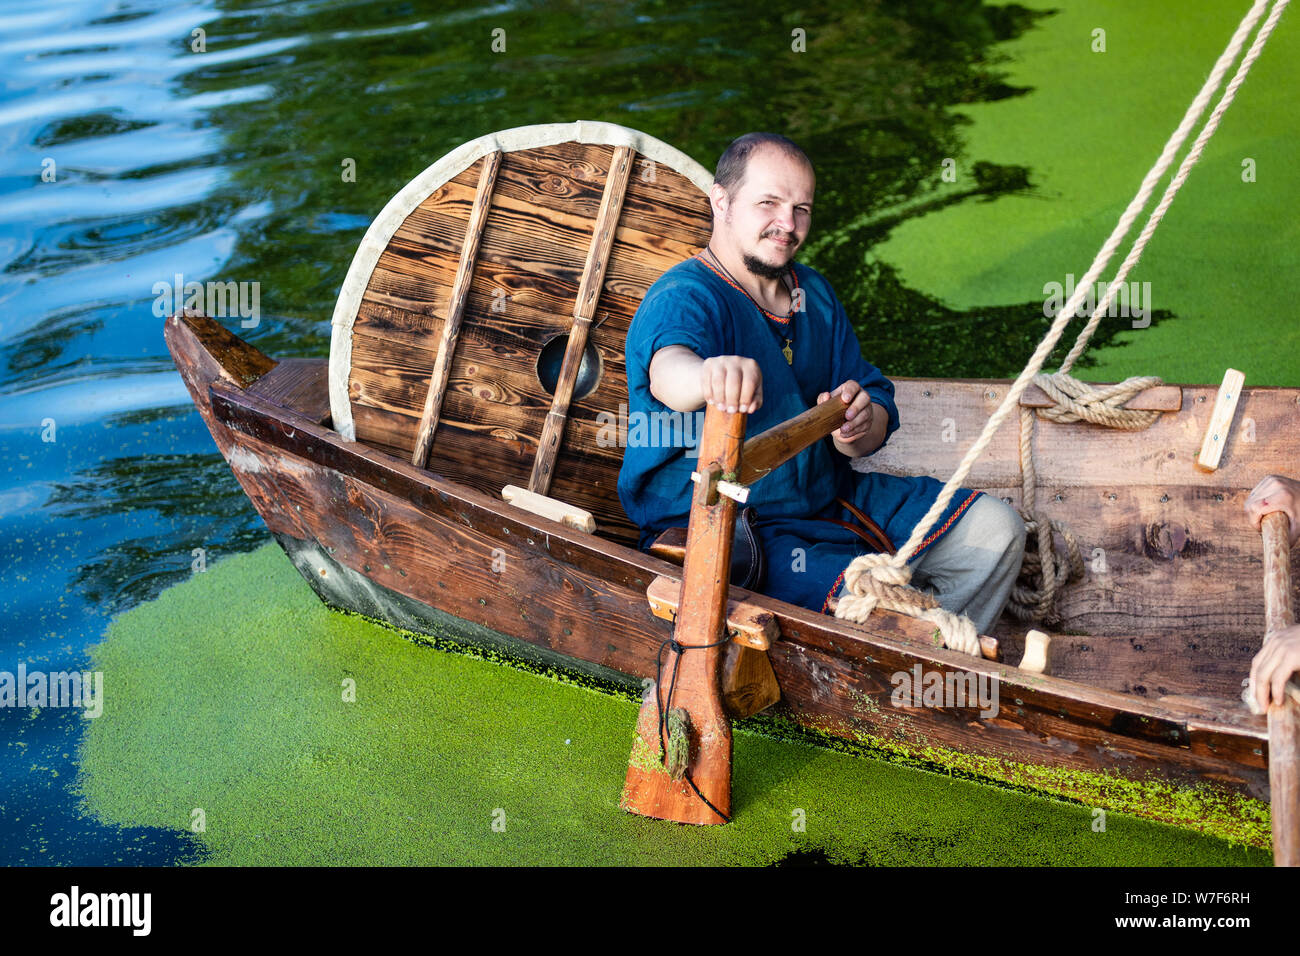 Les règles d'un drakkar viking, un homme en vêtements antiques se trouve  dans un bateau à voile en bois Photo Stock - Alamy